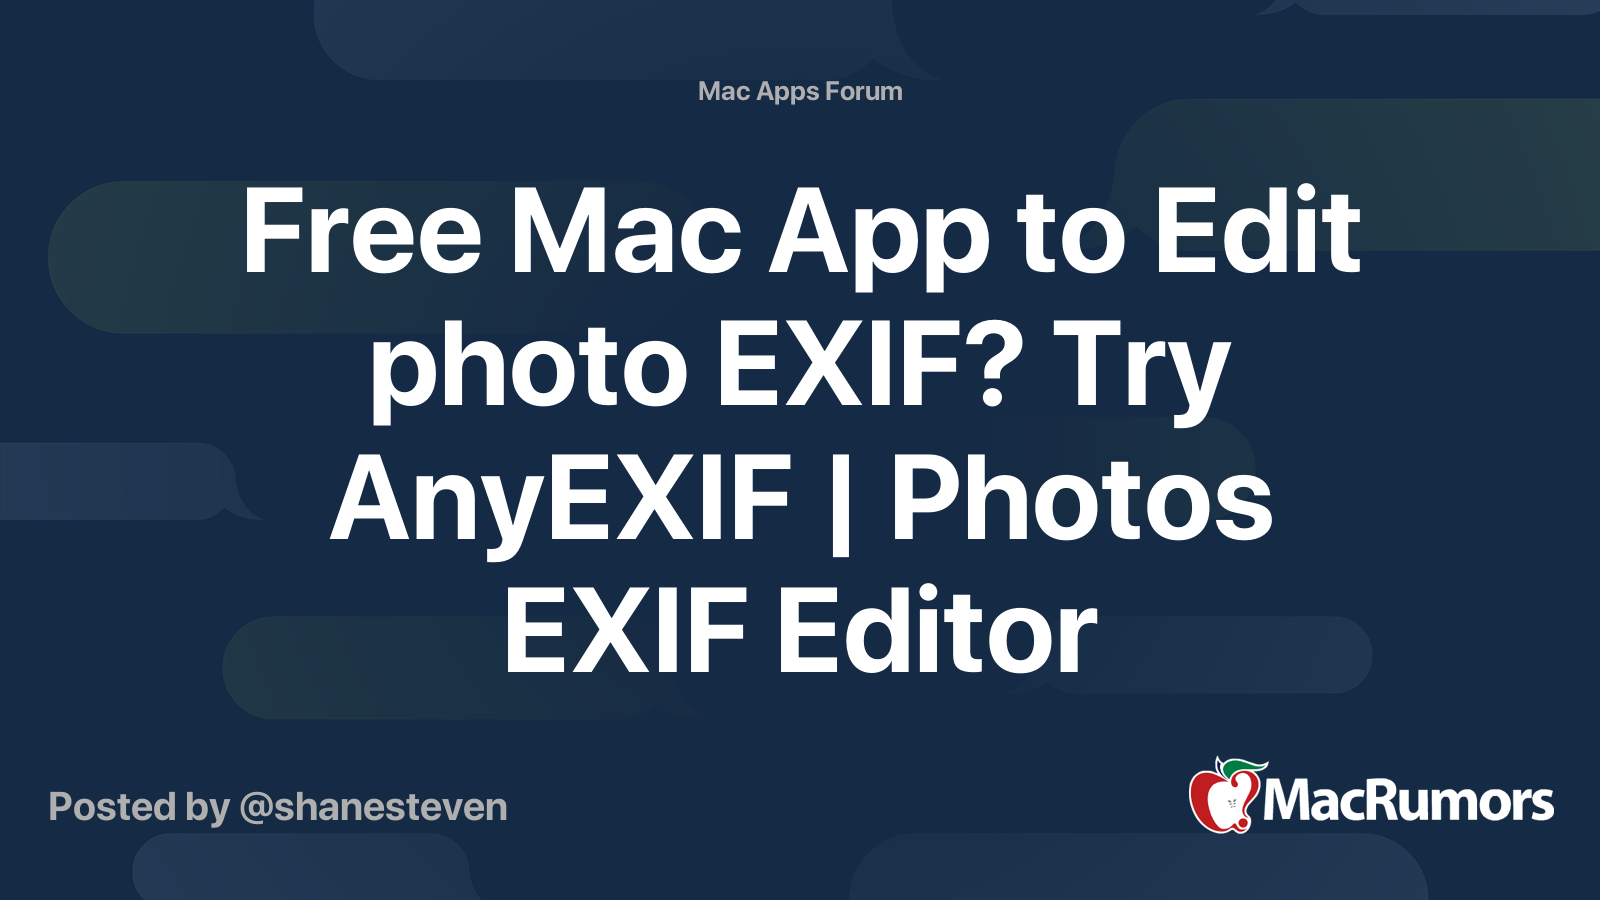 Exif Editor